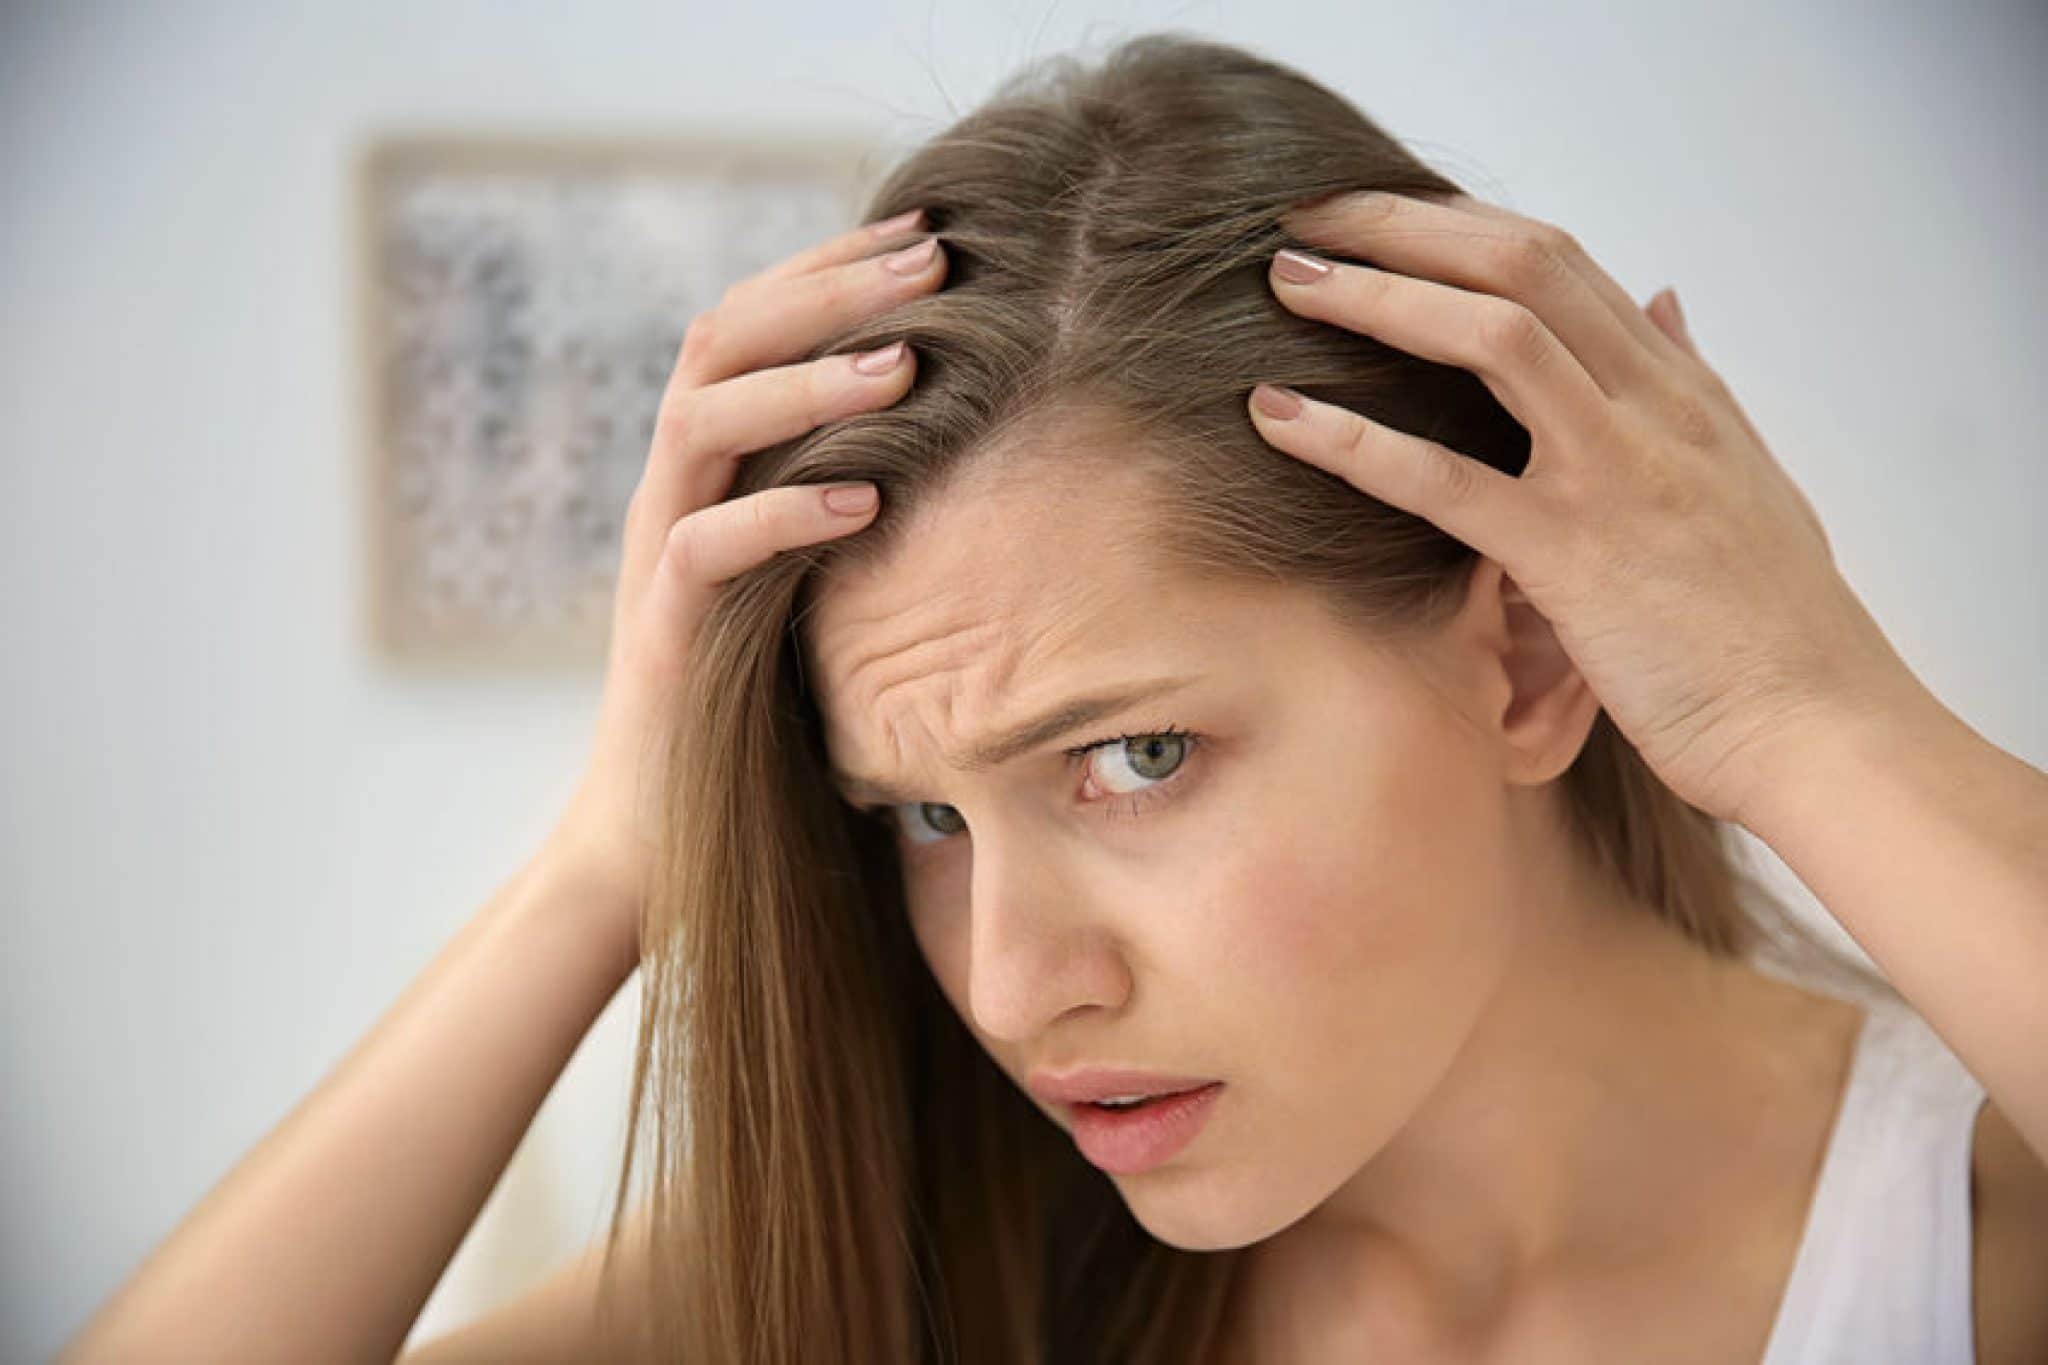 Выпадение волос – причины, диагностика, современное лечение * клиника диана в санкт-петербурге